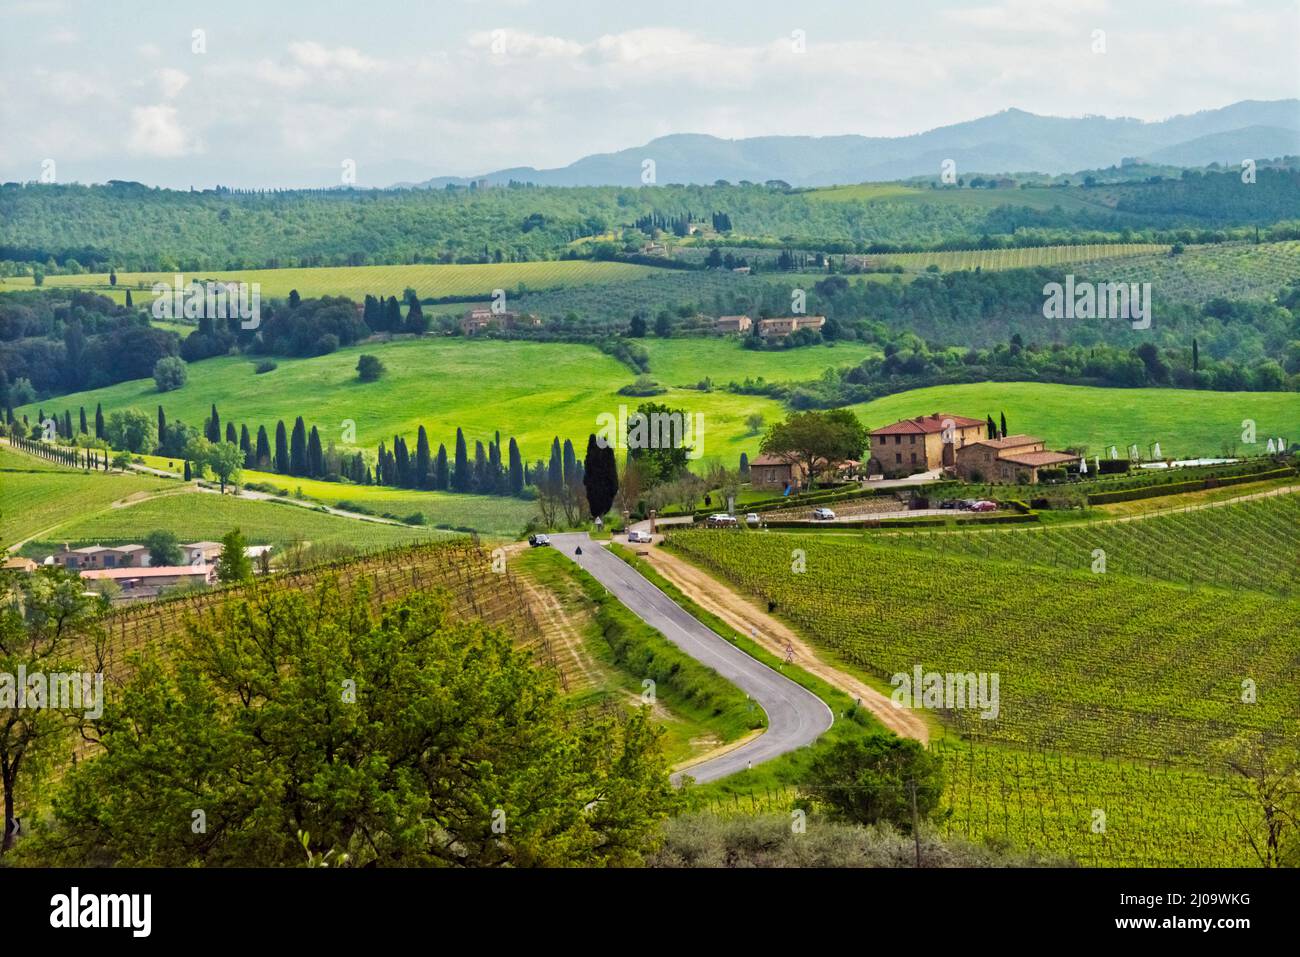 Village house with vineyard, Chianti, Tuscany Region, Italy Stock Photo